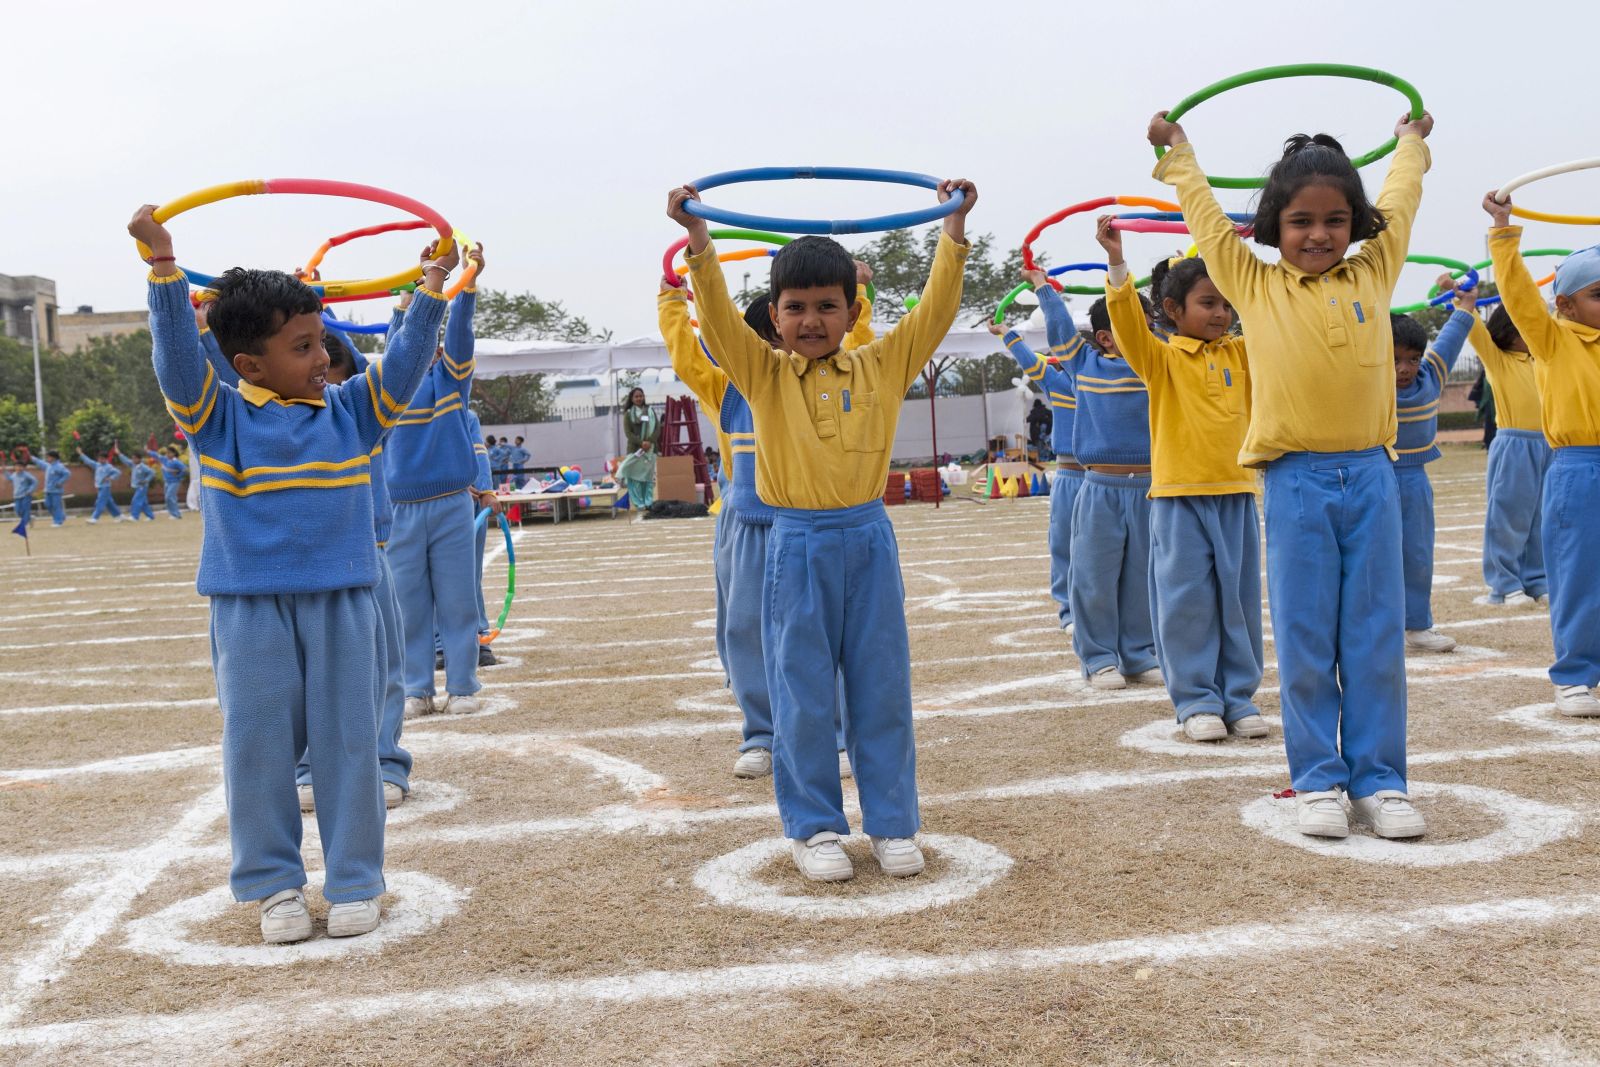 Vorschulkinder in einer Privatschule in Neu-Delhi.